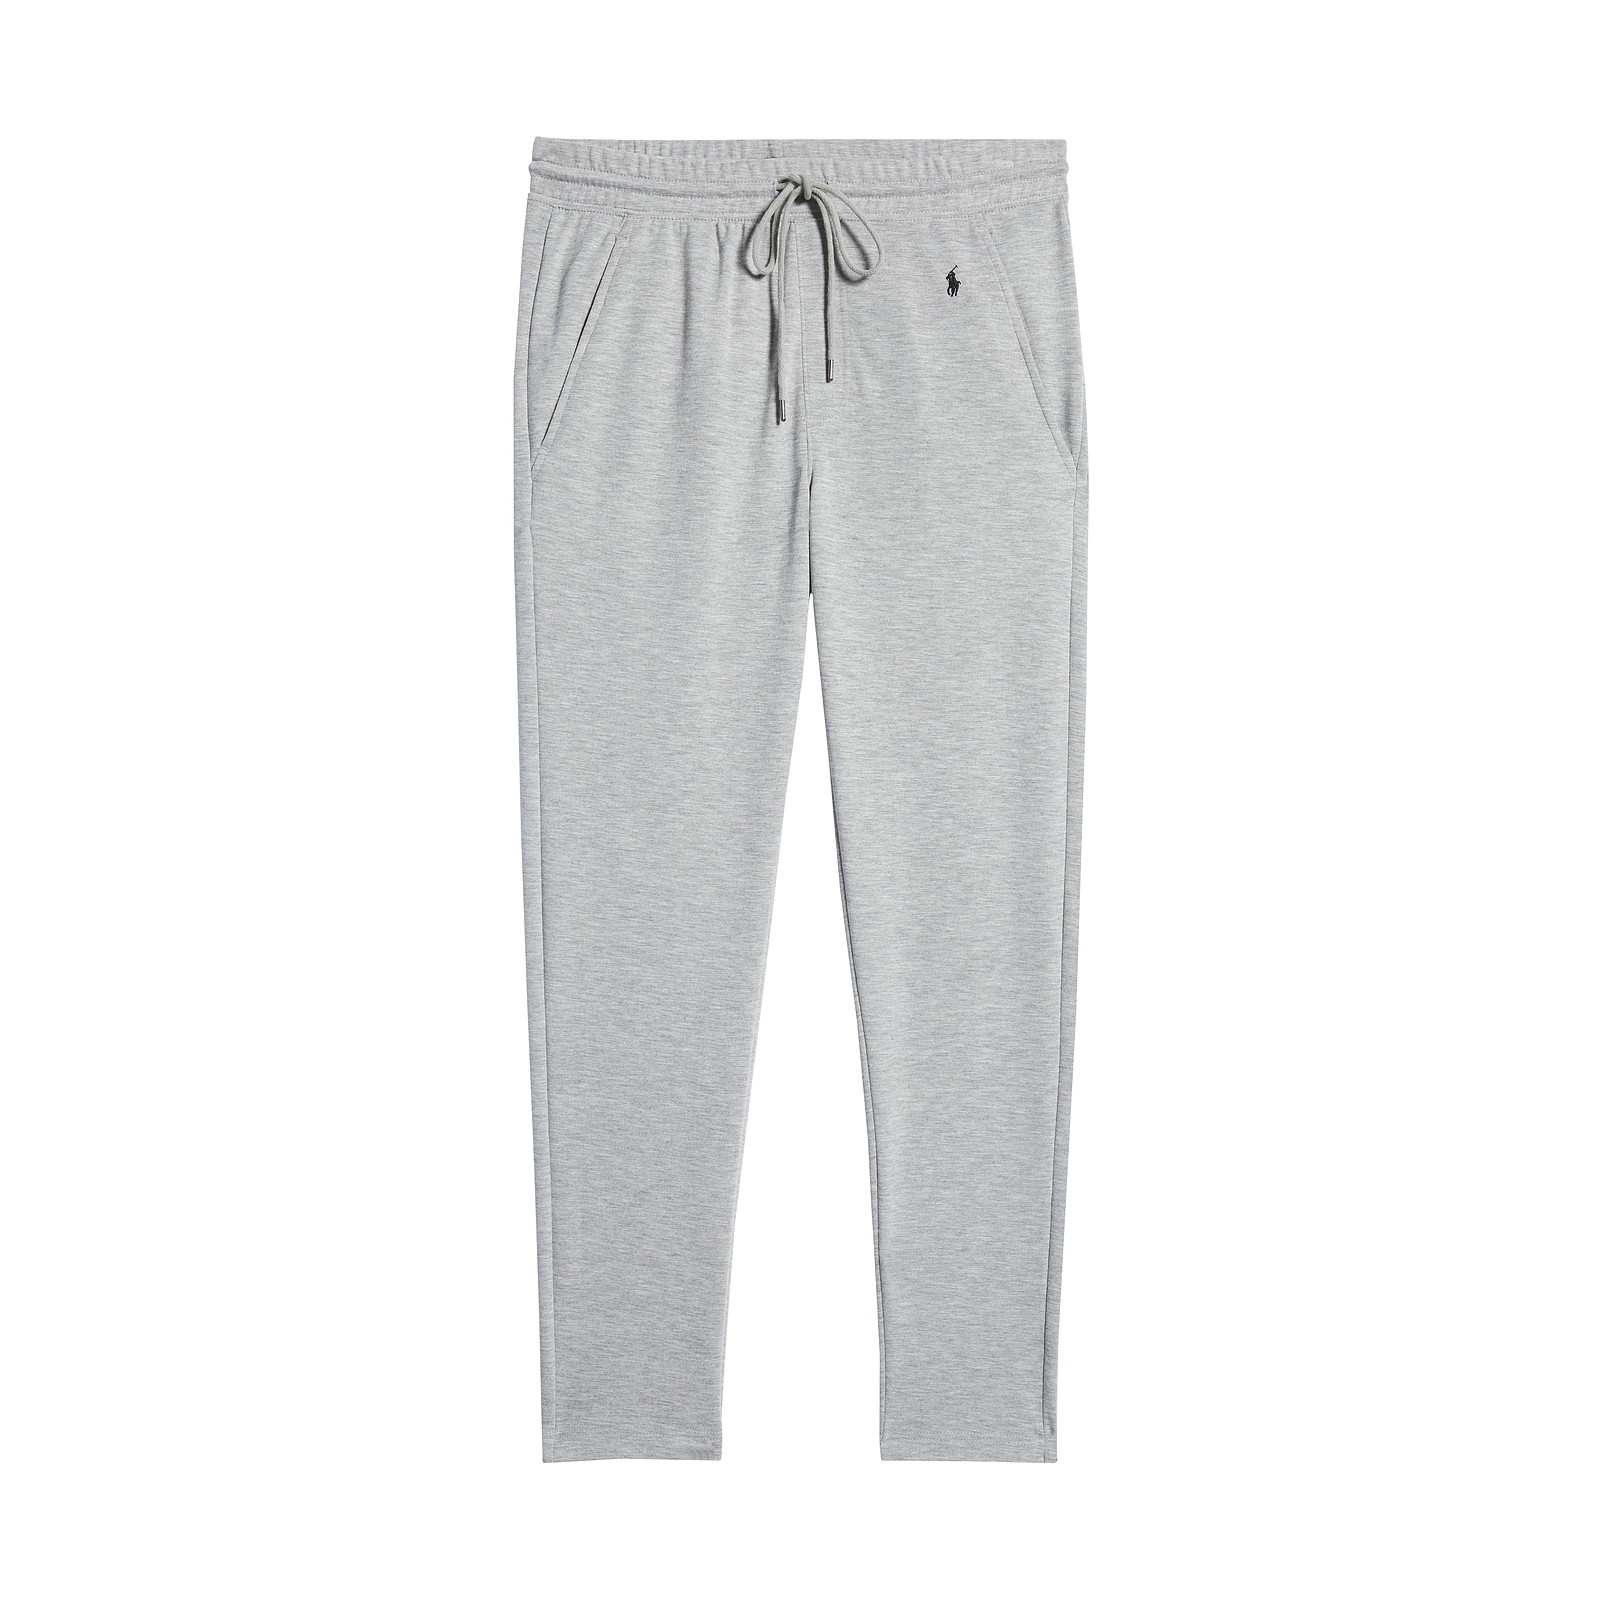 Ralph Lauren Polo Ralph Lauren Mens Grey Heather Mini Terry Pajama Pants $58